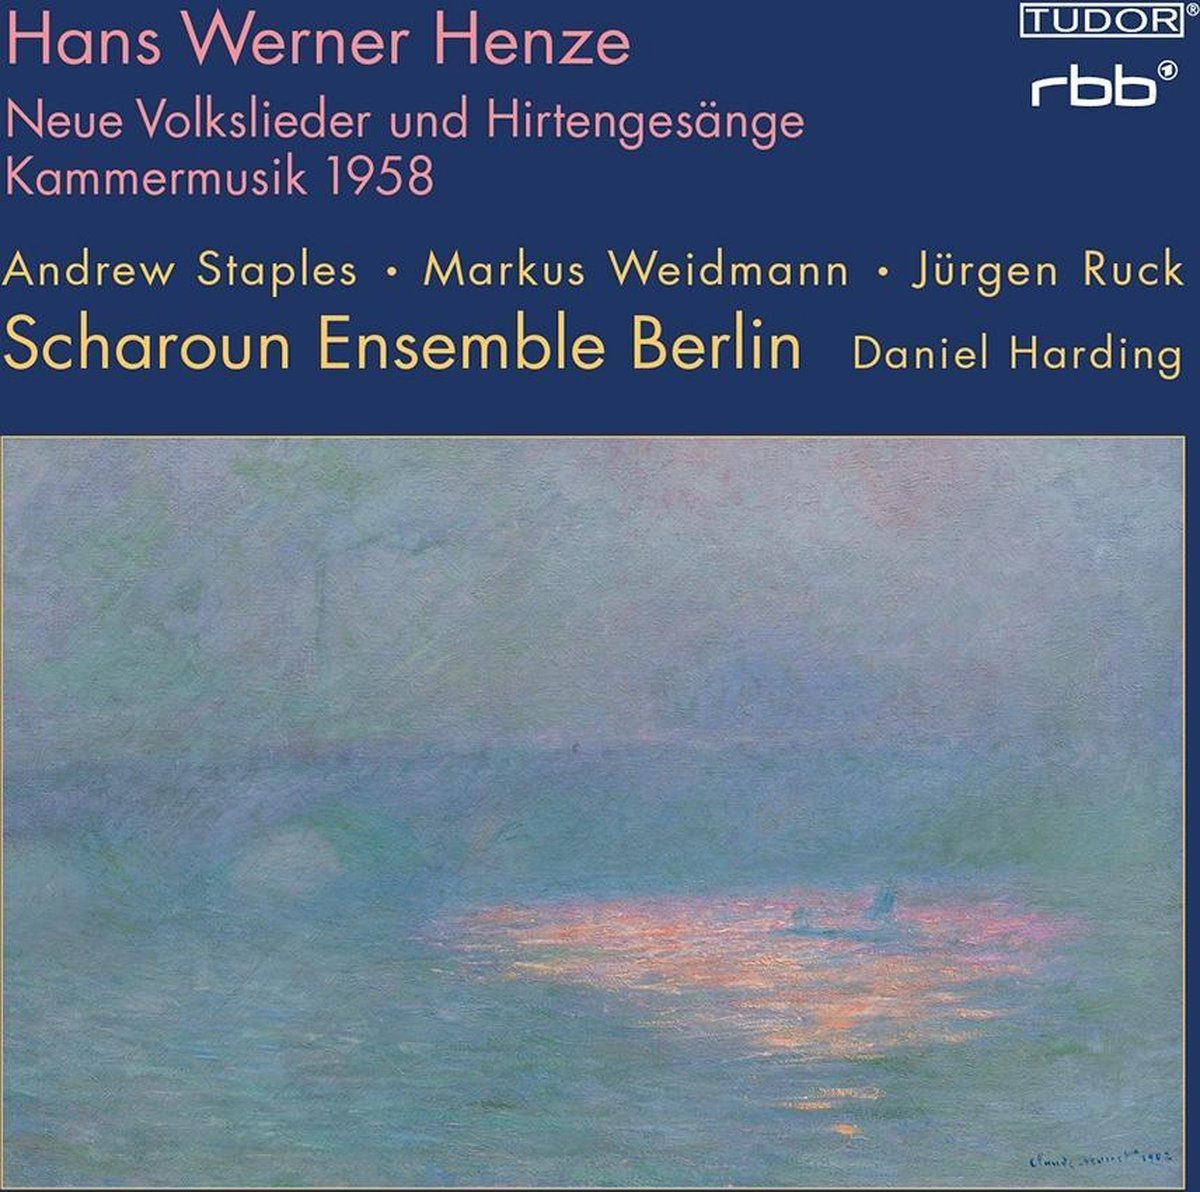 Afbeelding van product Henze: Kammermusik 1958  - Scharoun Ensemble Berlin